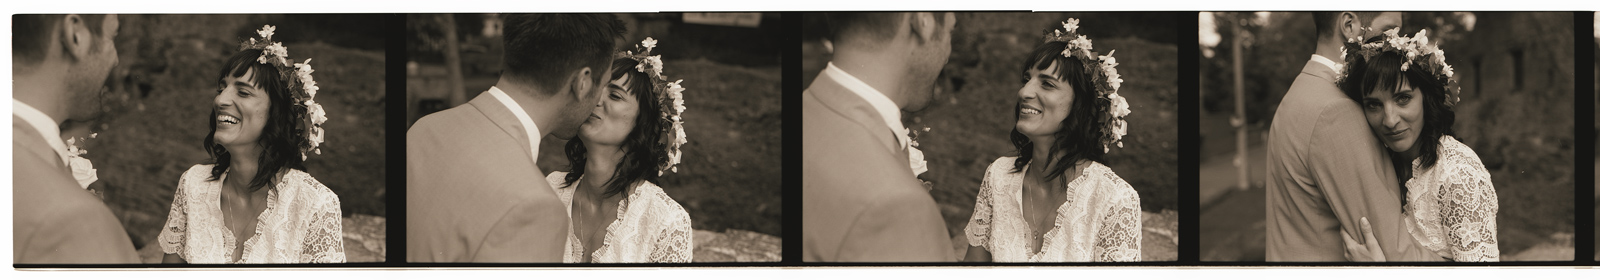 Photographe professionnel Nord spécialisé NB. Séance photo couple marié. Planche contact noir et blanc spécialité argentique